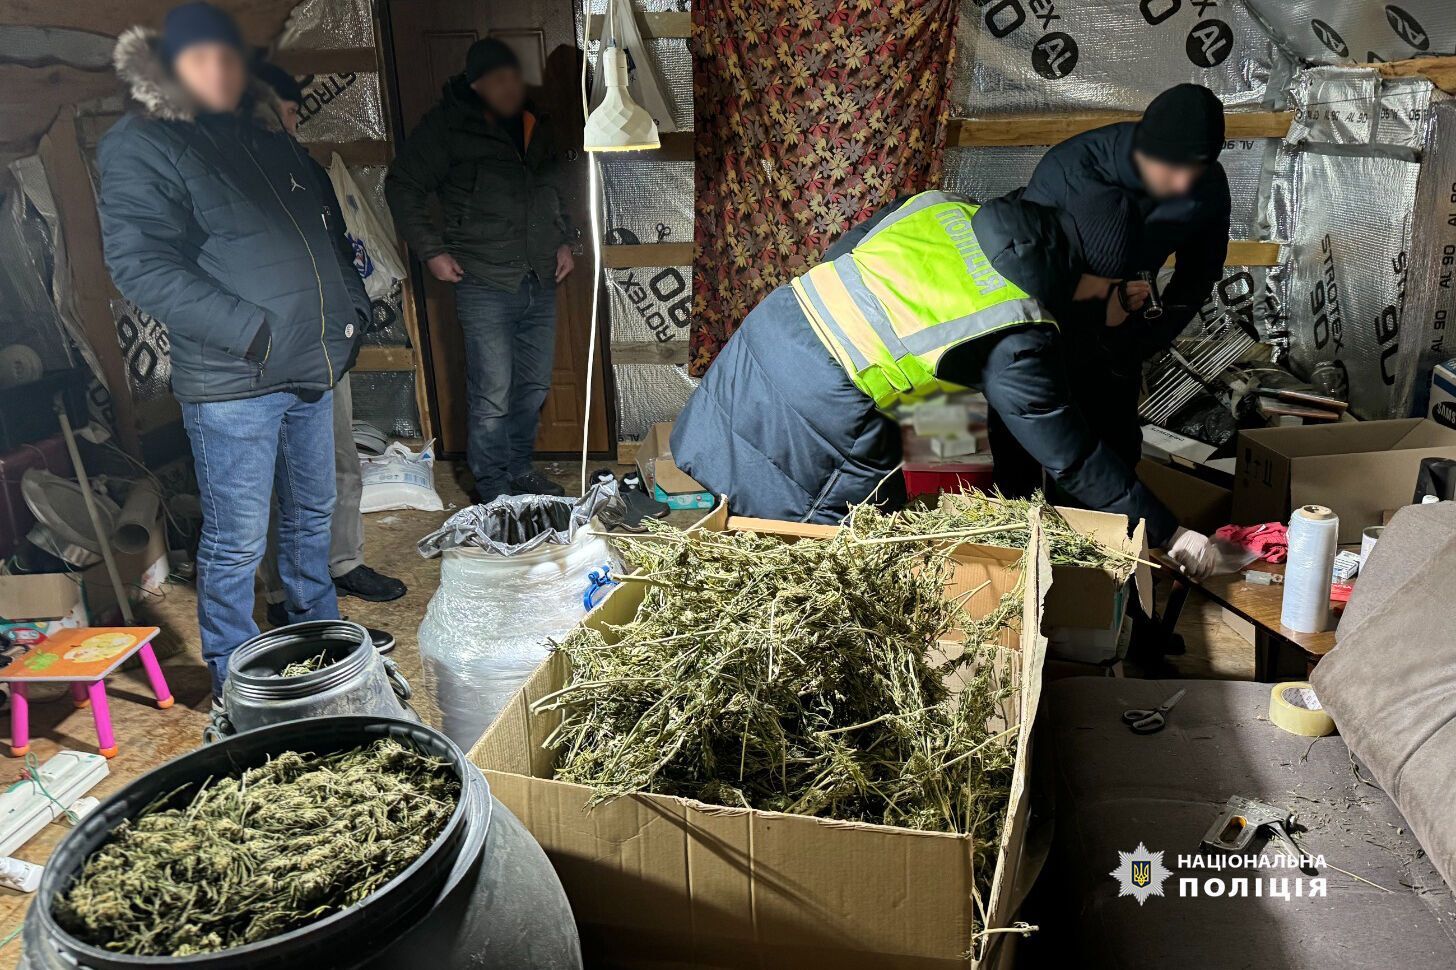 Правоохоронці Києва викрили масштабний наркобізнес: вилучили понад 60 кг "товару" на 18 млн грн. Фото і відео